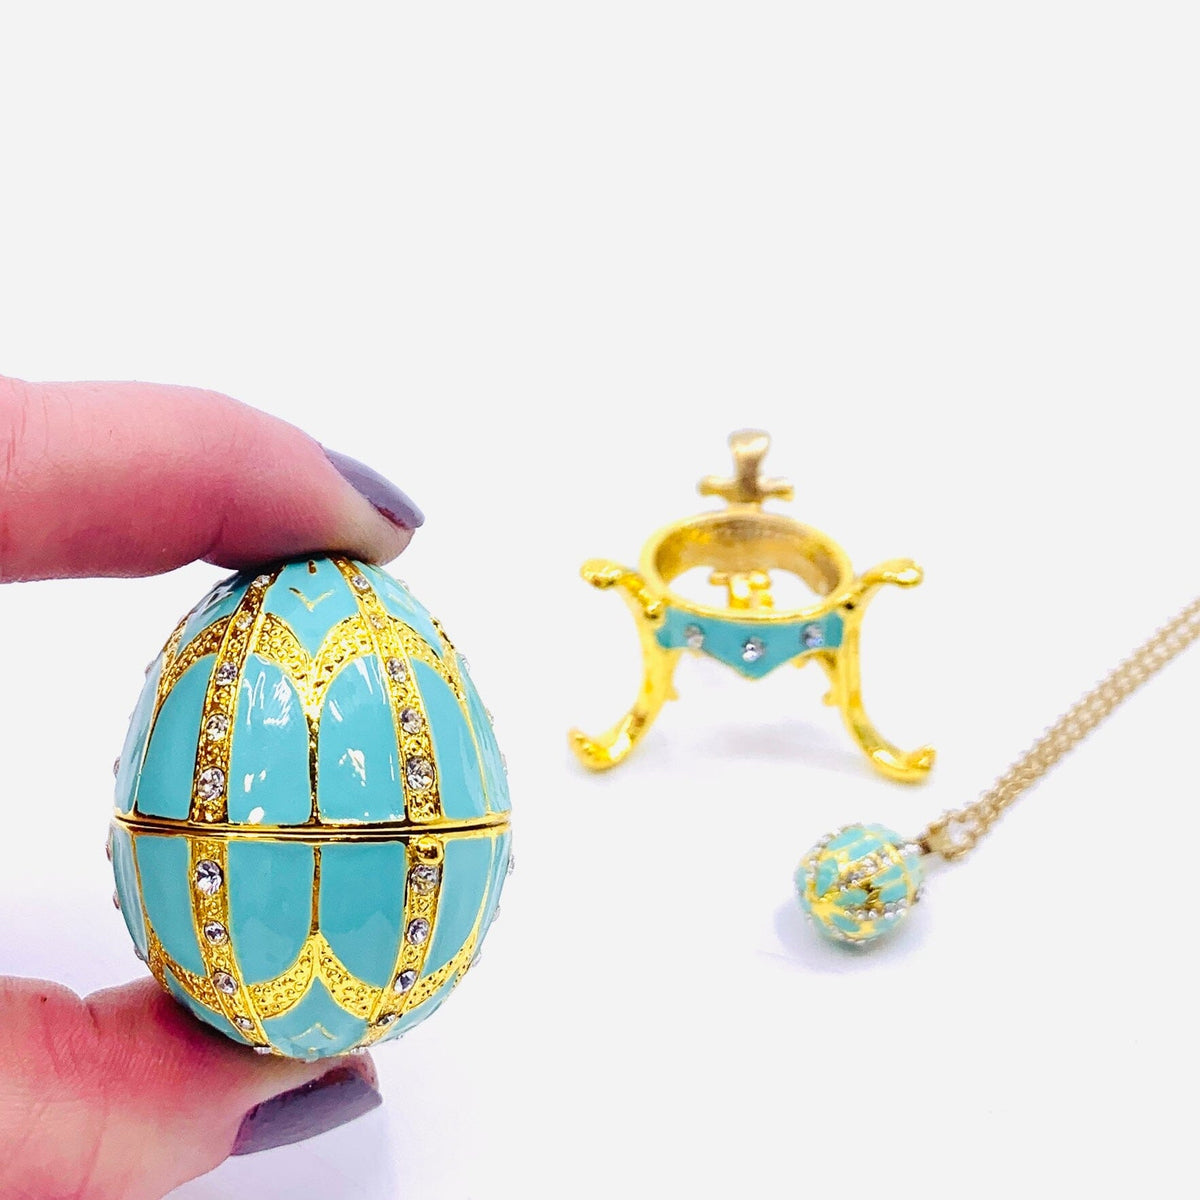 Bejeweled Enamel Trinket Box and Pendant 25, Turquoise Faberge Style Egg Decor Kubla Craft 